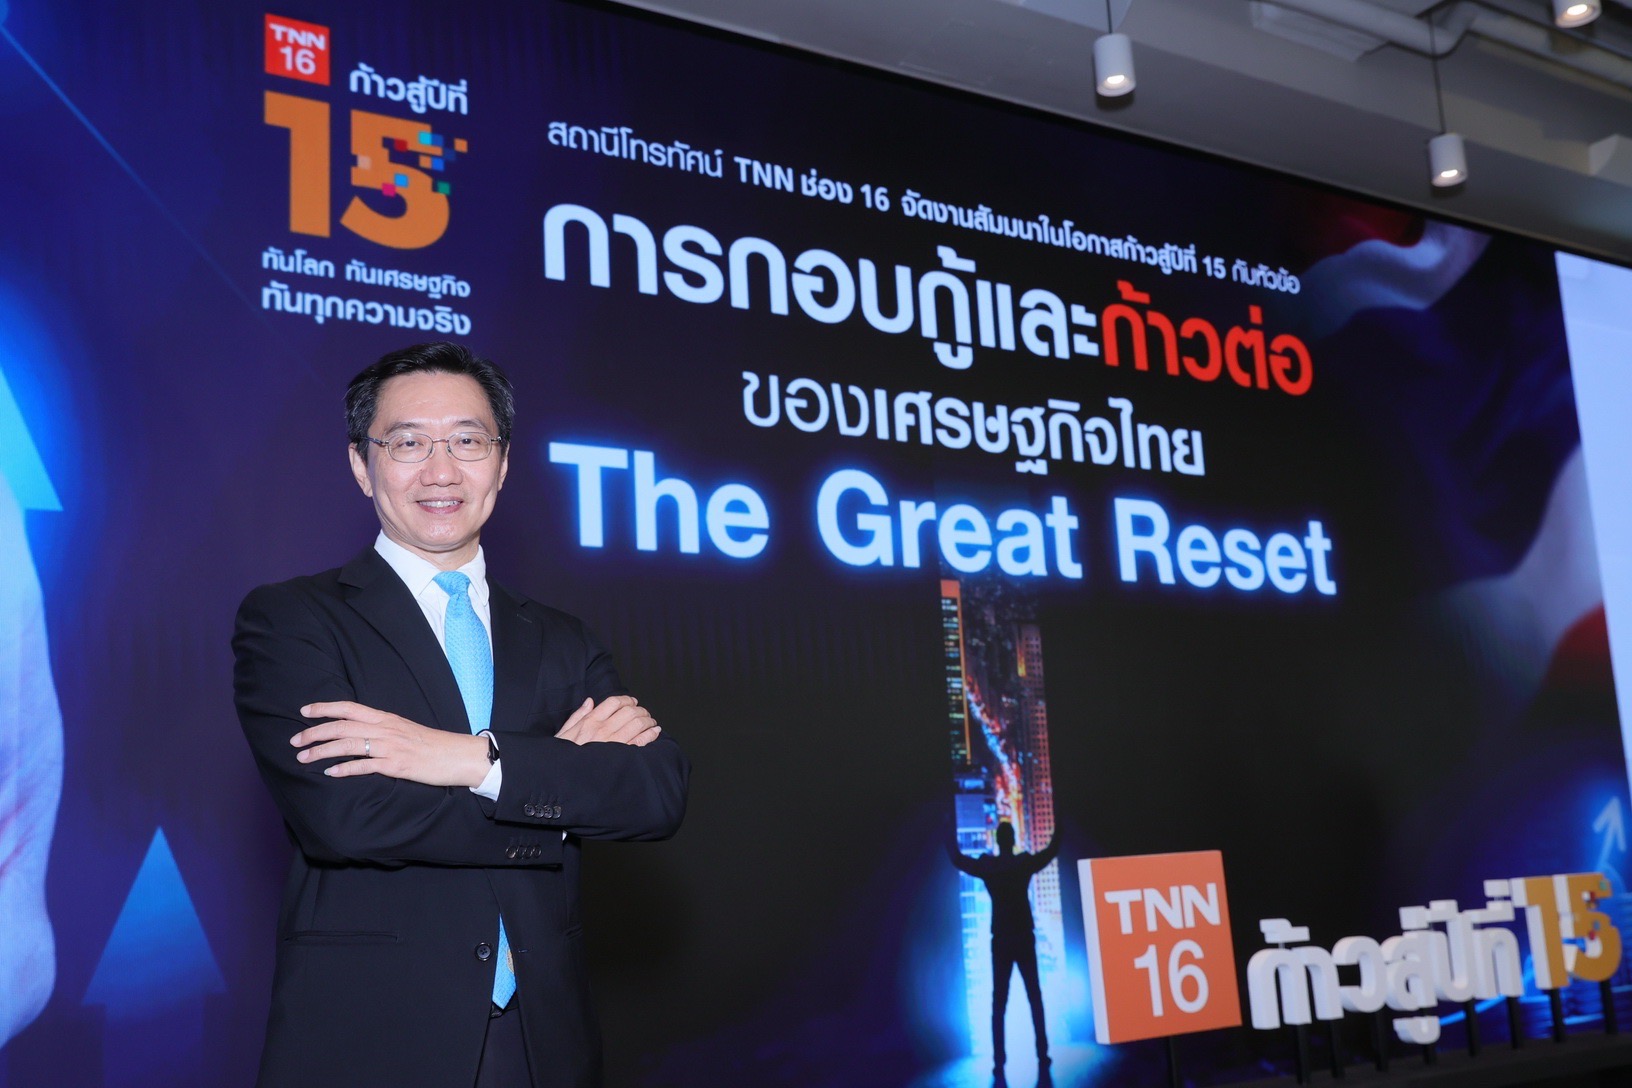 ก้าวสู่ปีที่ 15…TNN ช่อง 16 จัดสัมมนาใหญ่ “การกอบกู้และก้าวต่อของเศรษฐกิจไทย The Great Reset” เตรียมพร้อมคนไทยสู่โลกหลังโควิด-19 